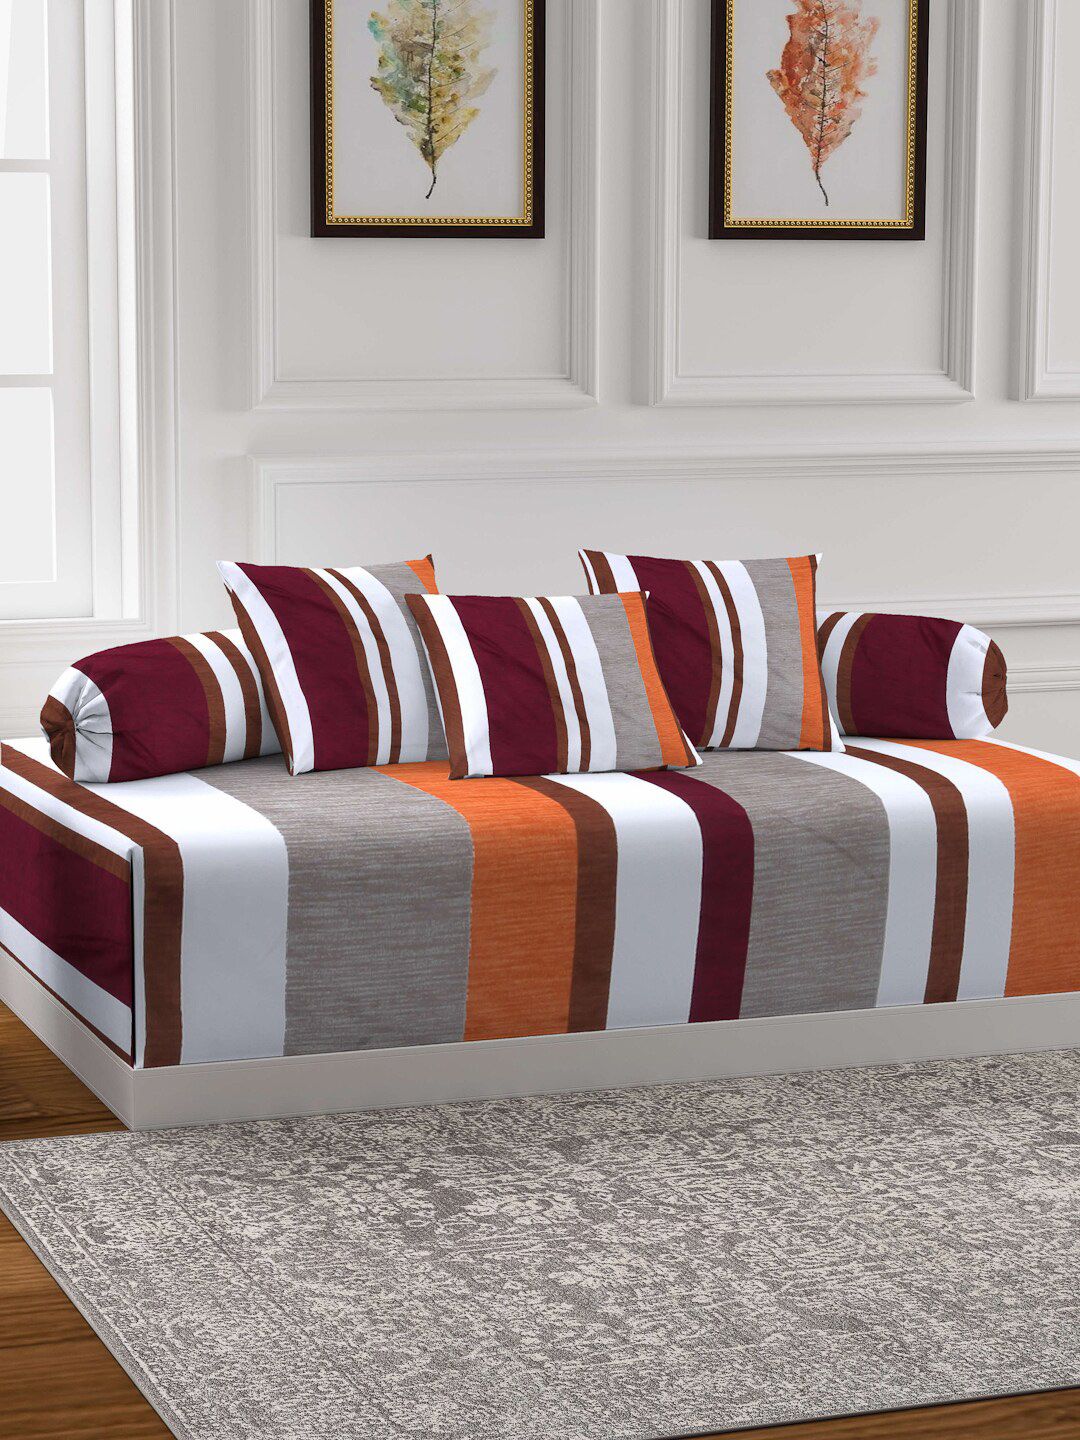 Arrabi Set of 6 White & Orange Striped Cotton Diwan Set Price in India